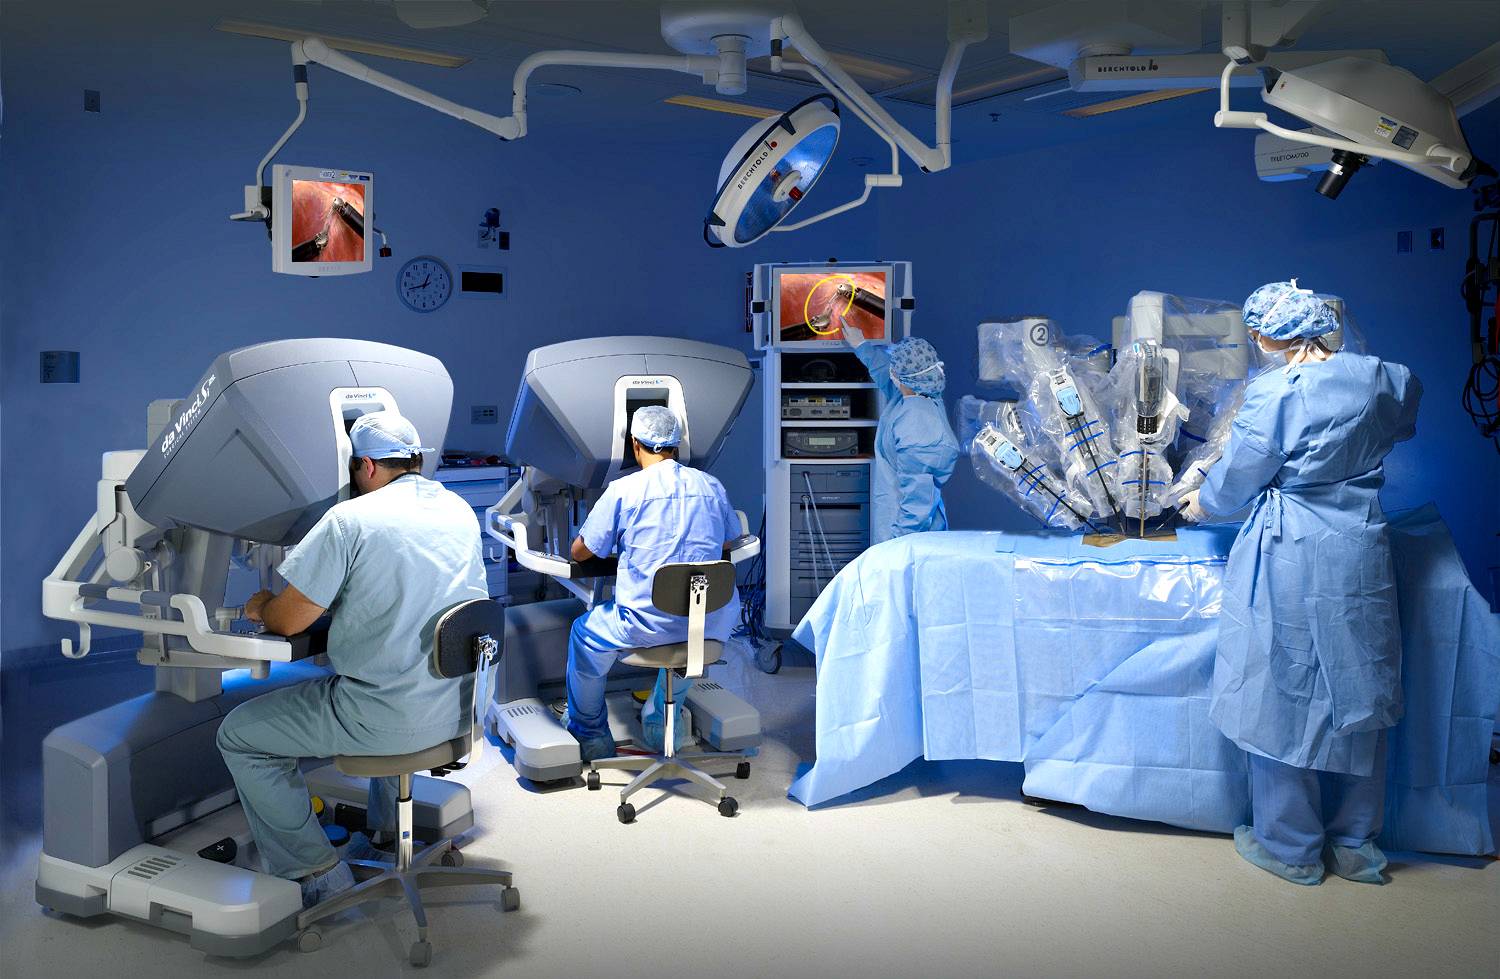 Операция в четыре руки: робот-ассистент да винчи позволяет проводить сложные операции в эндоскопической хирургии